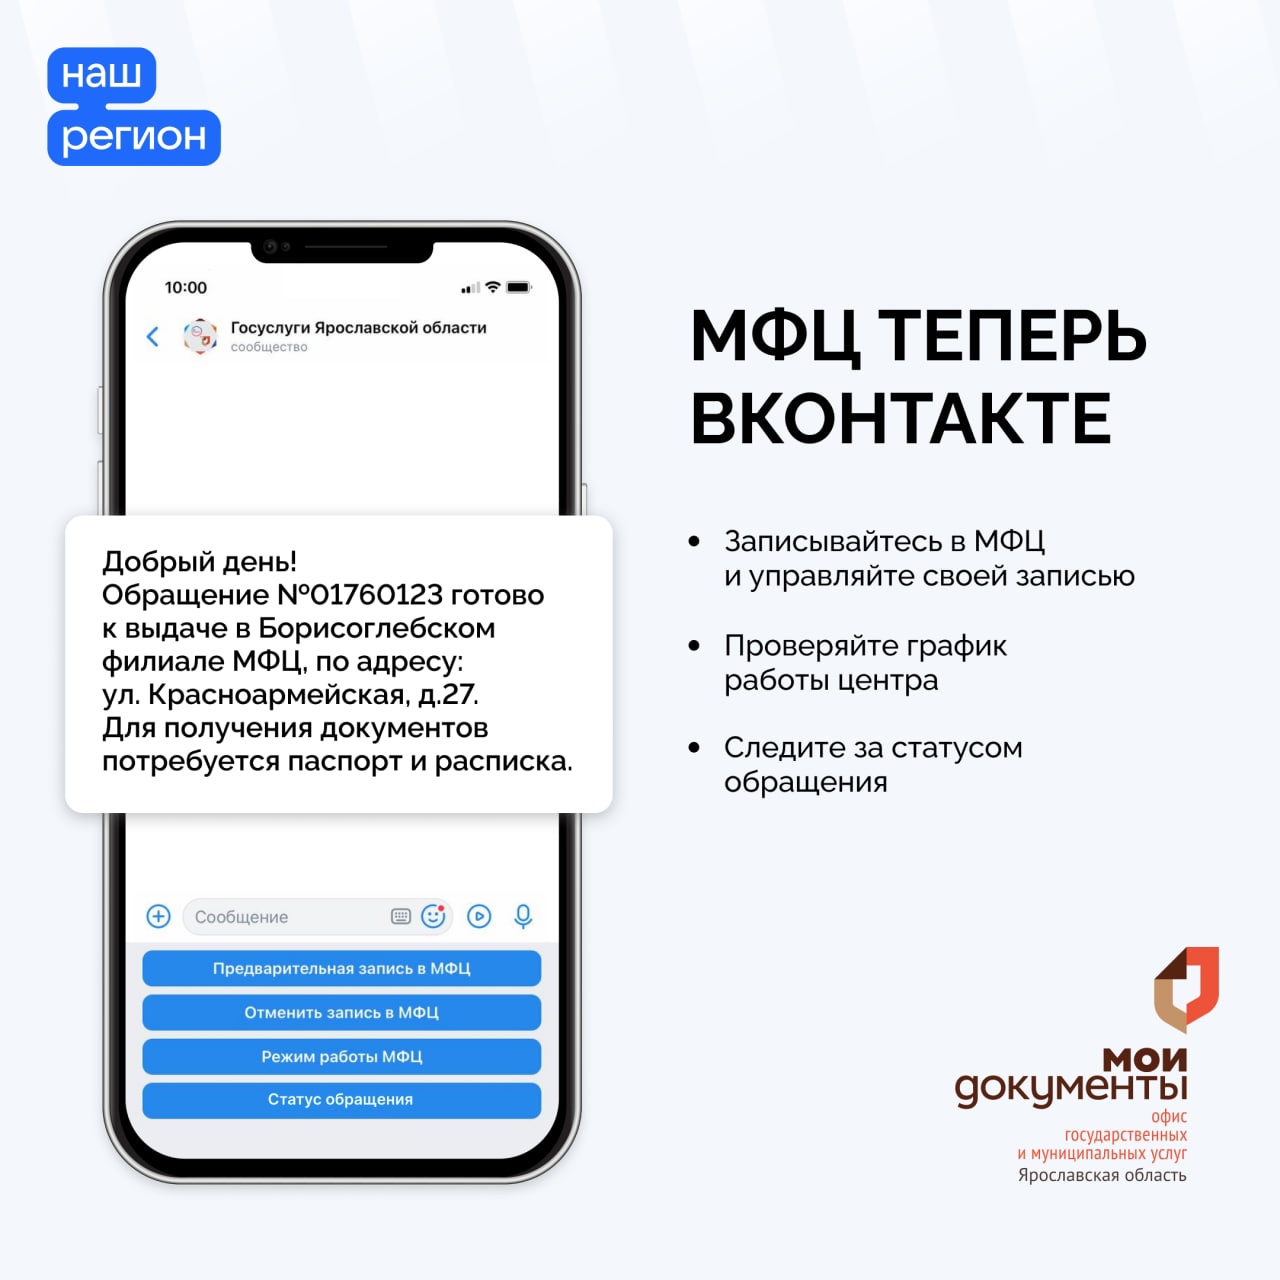 Ярославская область первой в России запустила систему взаимодействия МФЦ с гражданами во «ВКонтакте»